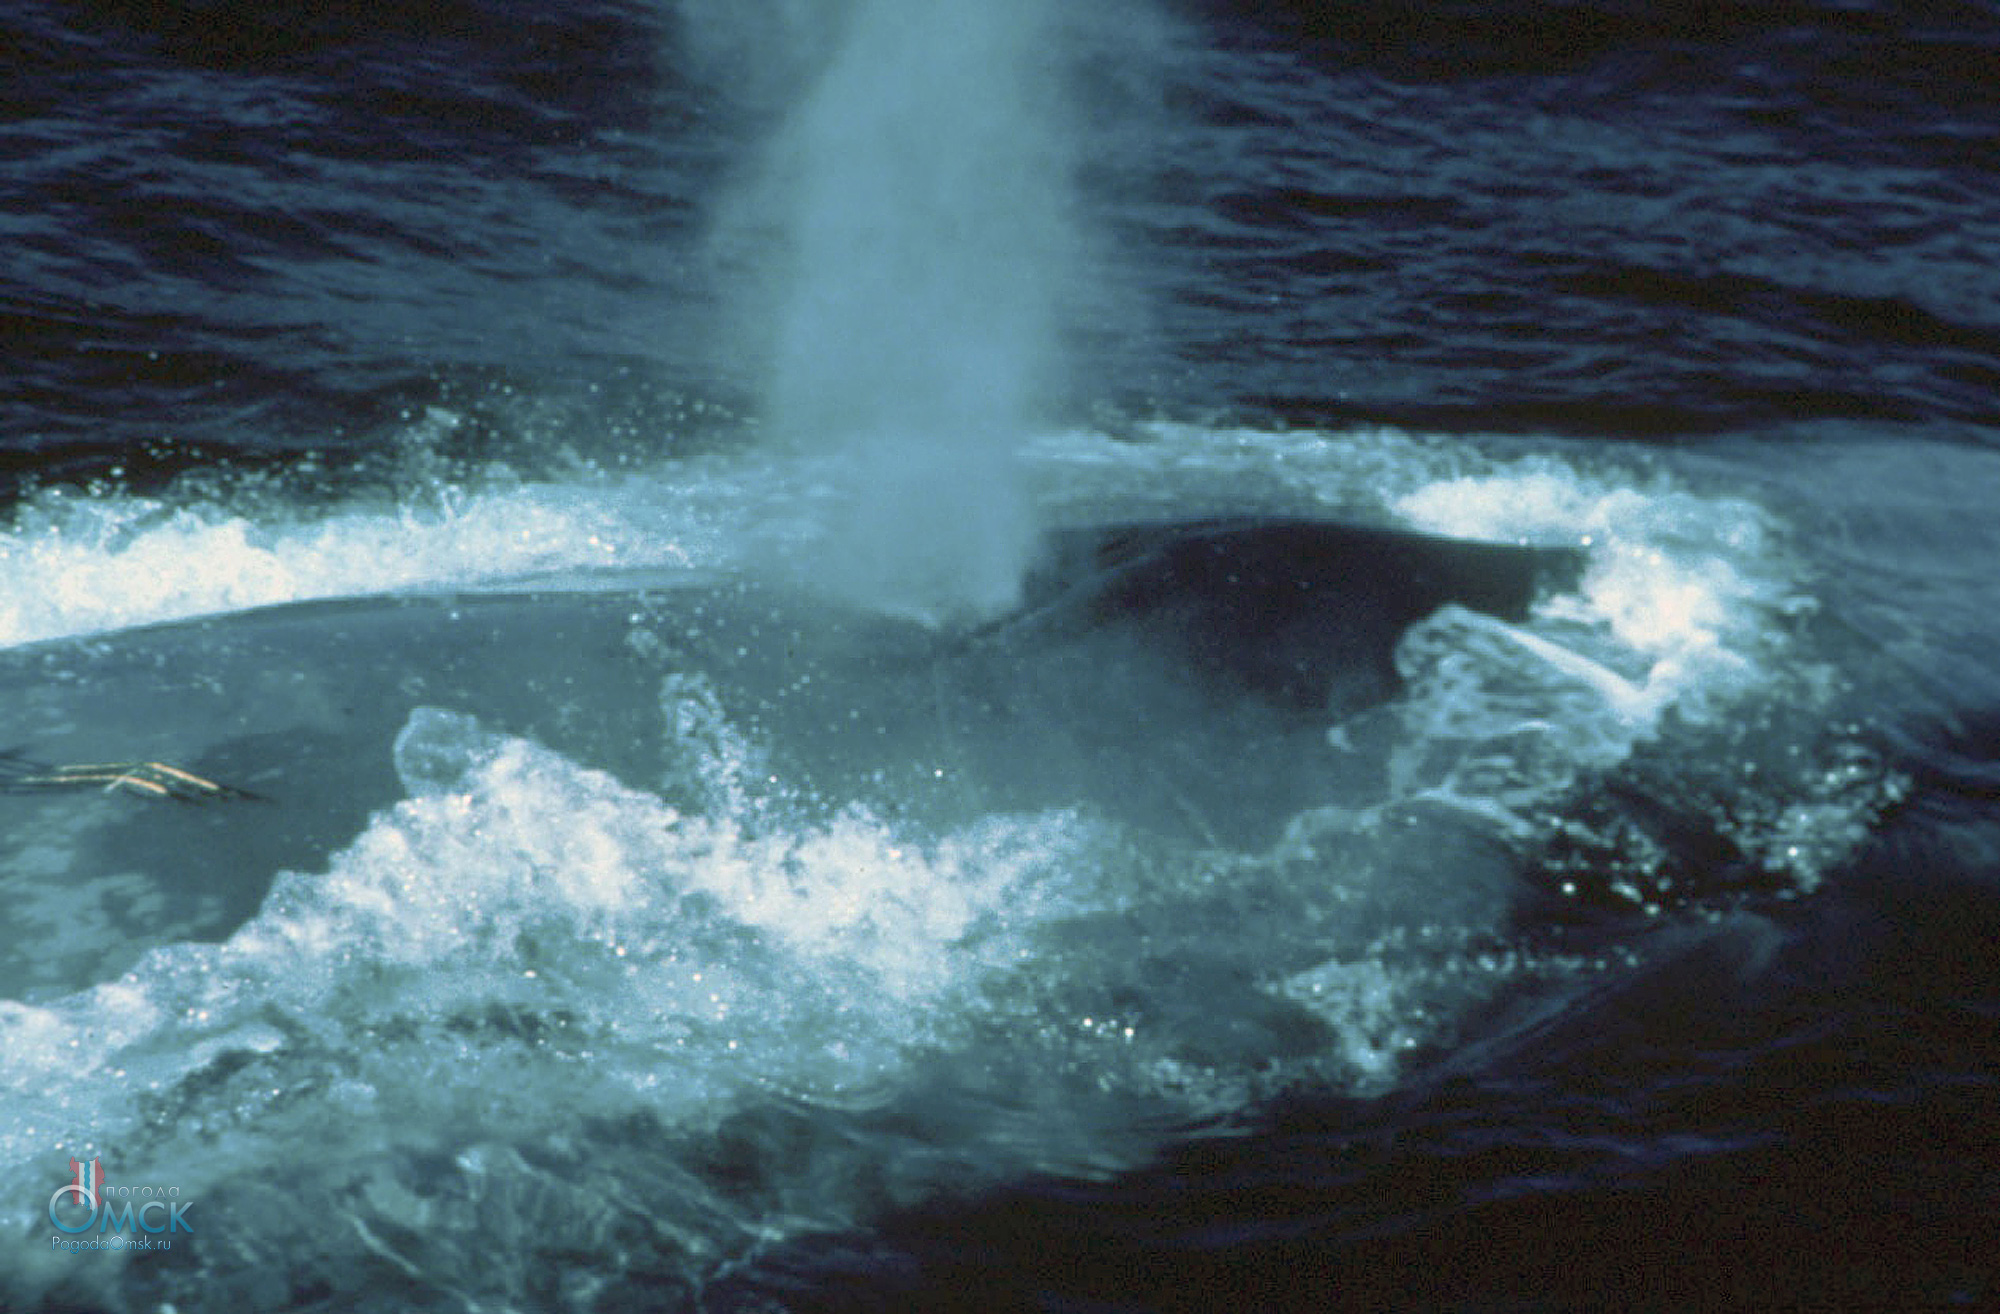 Синий кит выдыхает фонтан пара и брызг